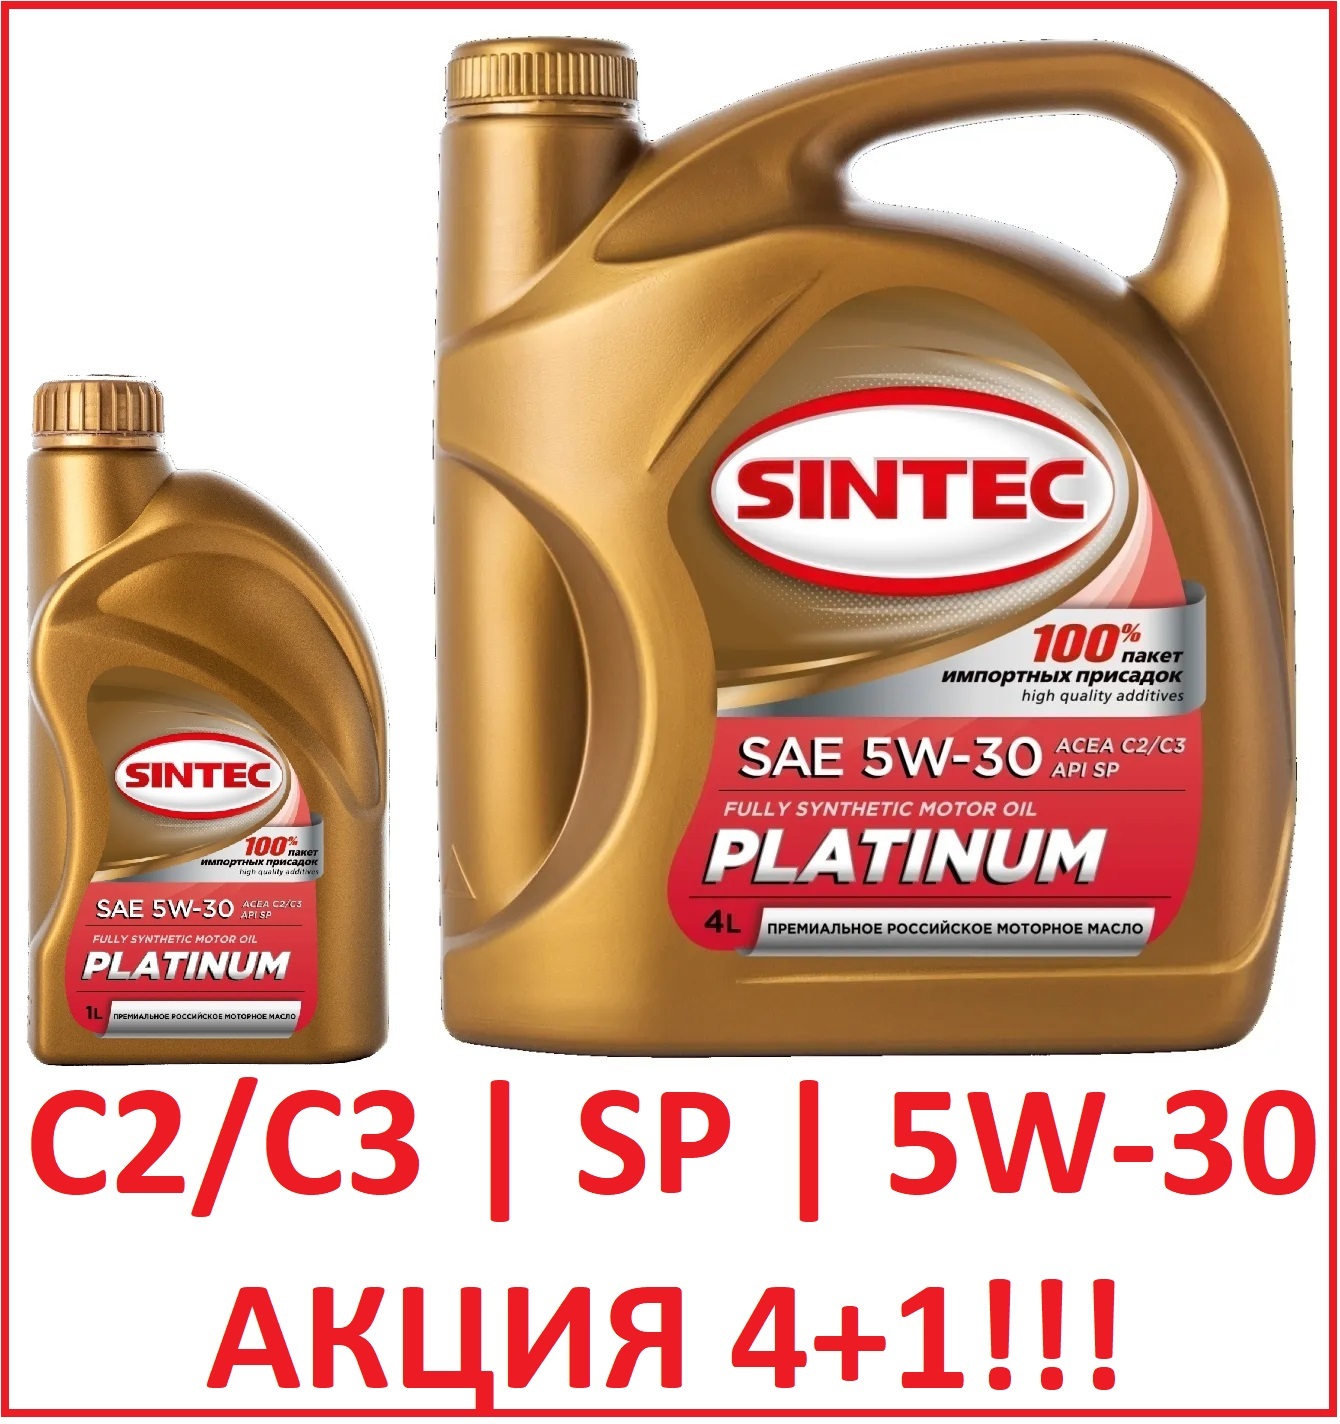 Синтек масло полусинтетика отзывы. Sintec Platinum SAE 5w-40. Sintec Platinum SAE 5w-30. Sintec Platinum SAE 5w-30 API SP, ACEA c2/c3. Sintec Platinum 5w-30 cf5.